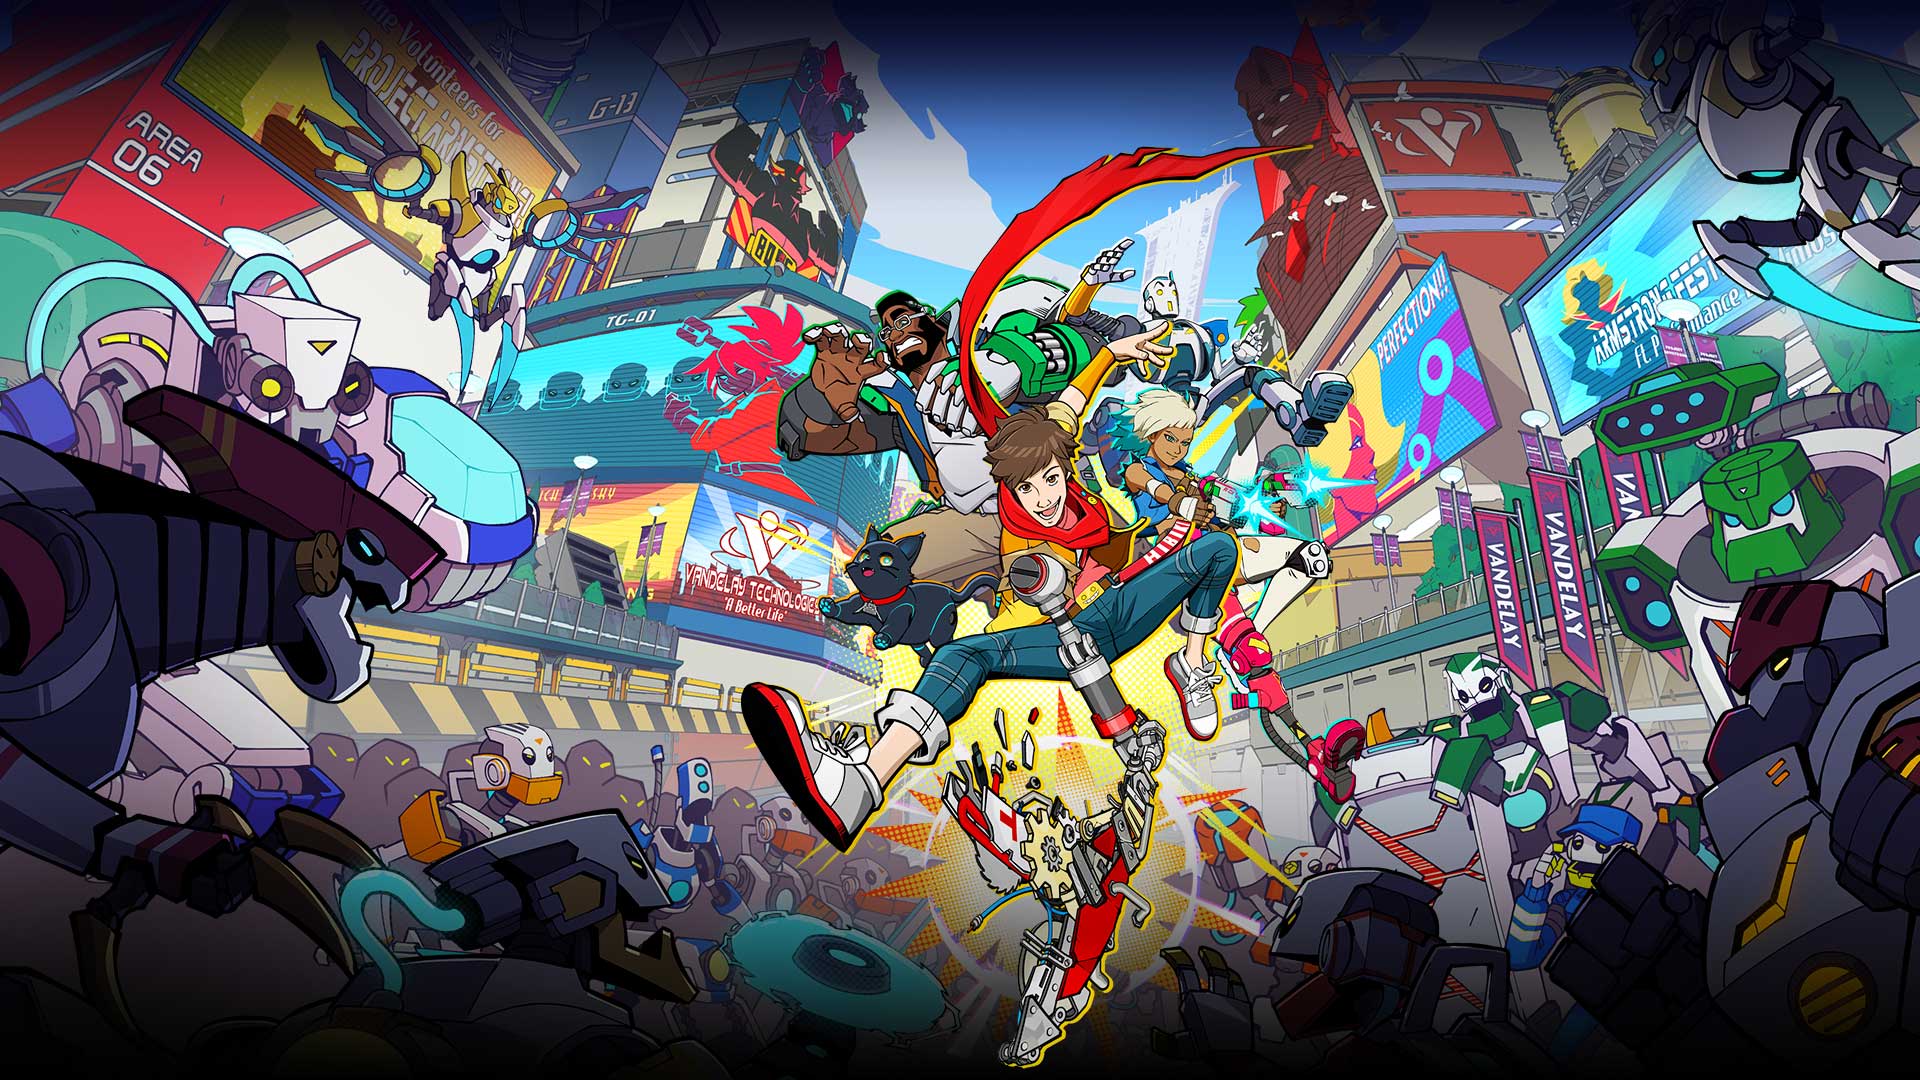 Chai en zijn teamgenoten poseren in de lucht terwijl een horde robots hen omsingelt.